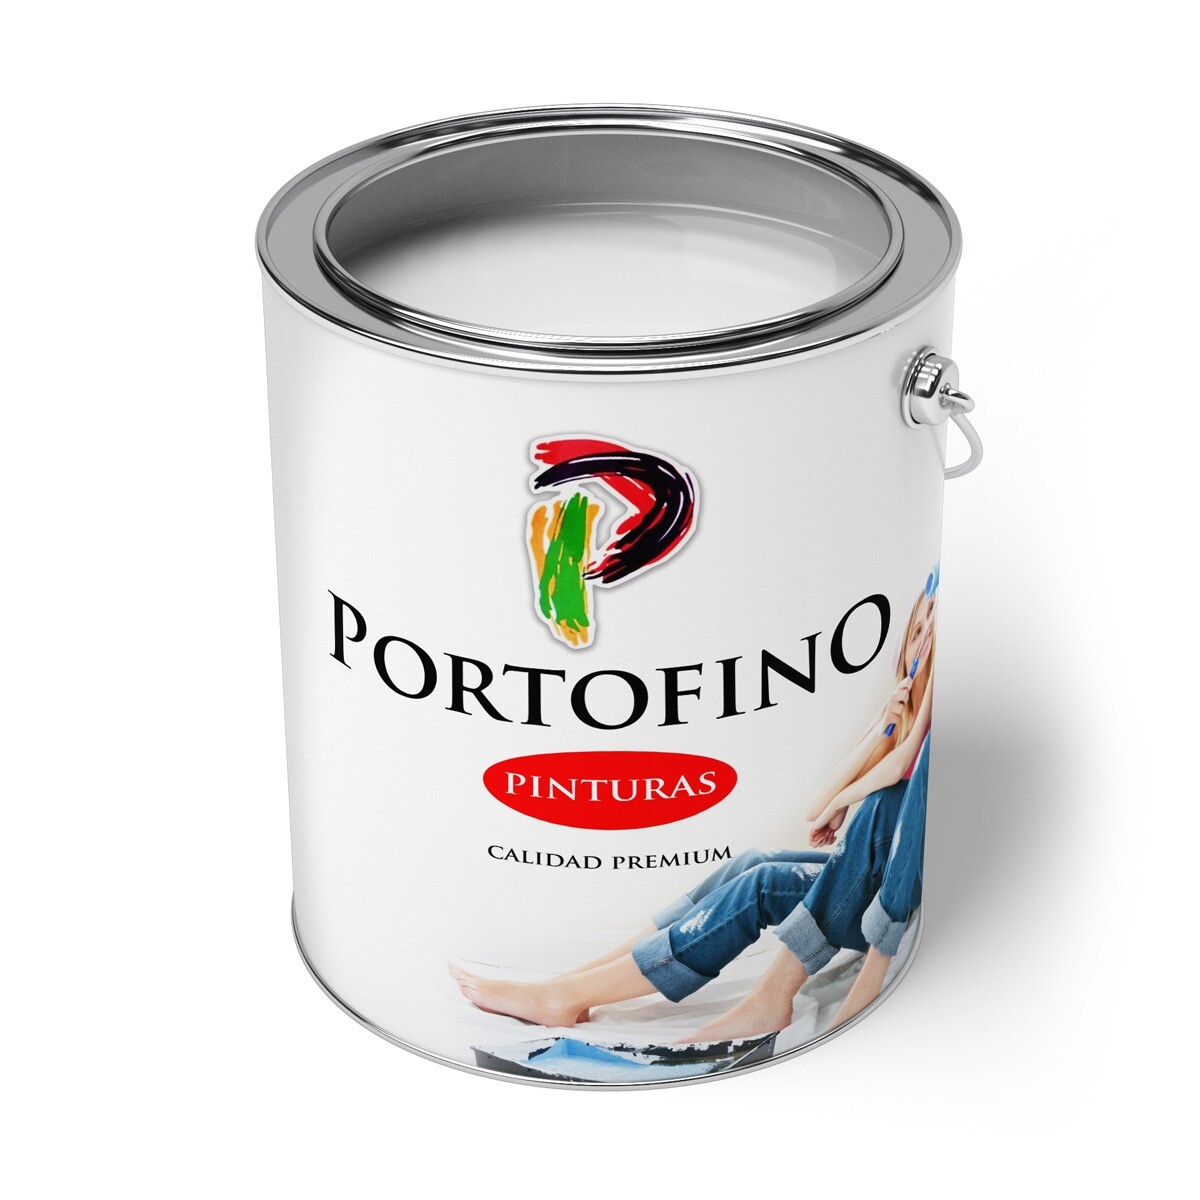 Convertilux Portofino 4 Lt. Vde.manzana 